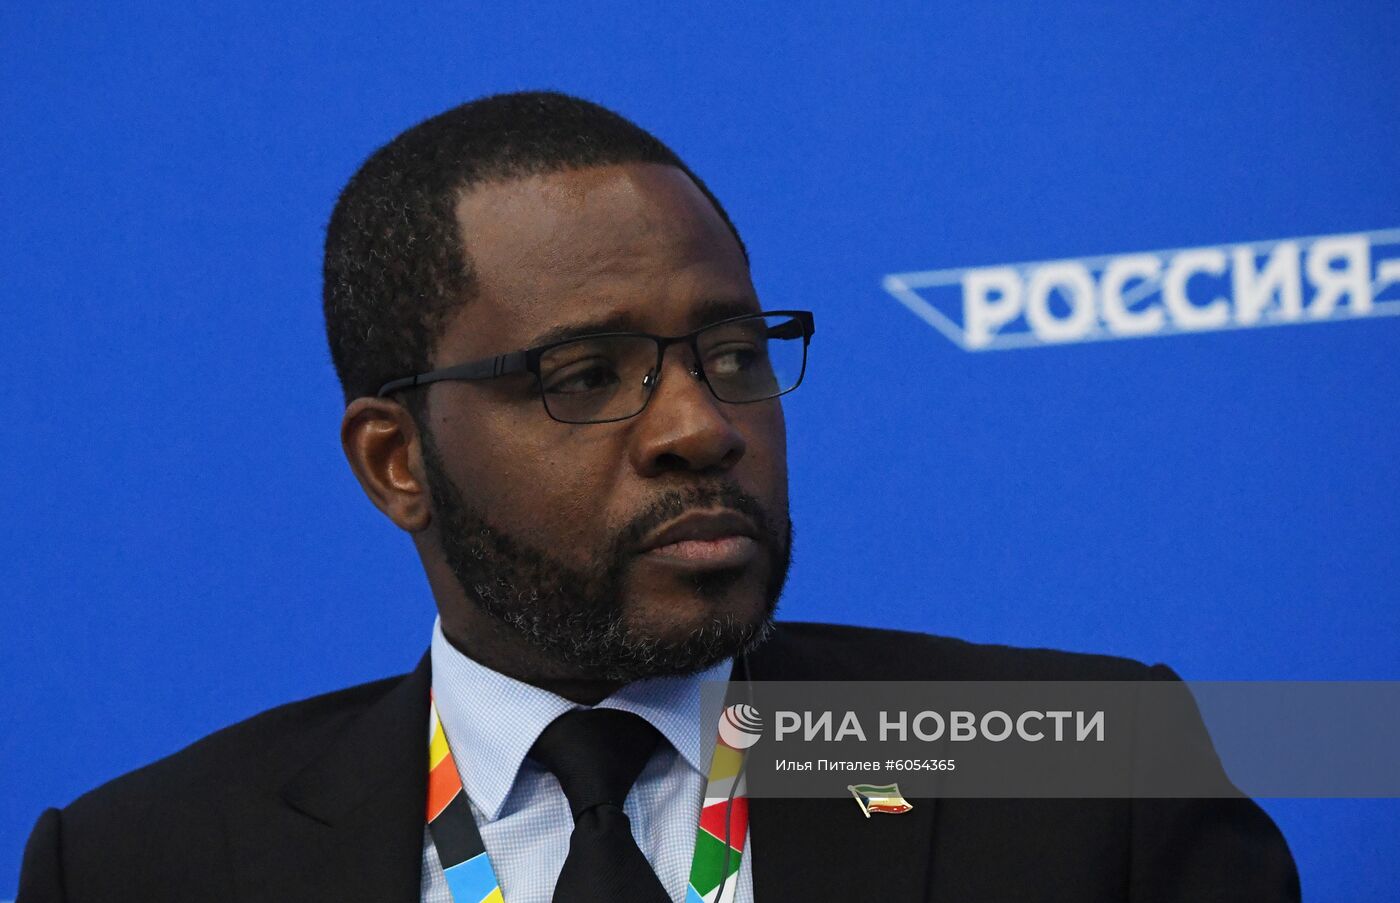 Экономический форум "Россия - Африка". День второй